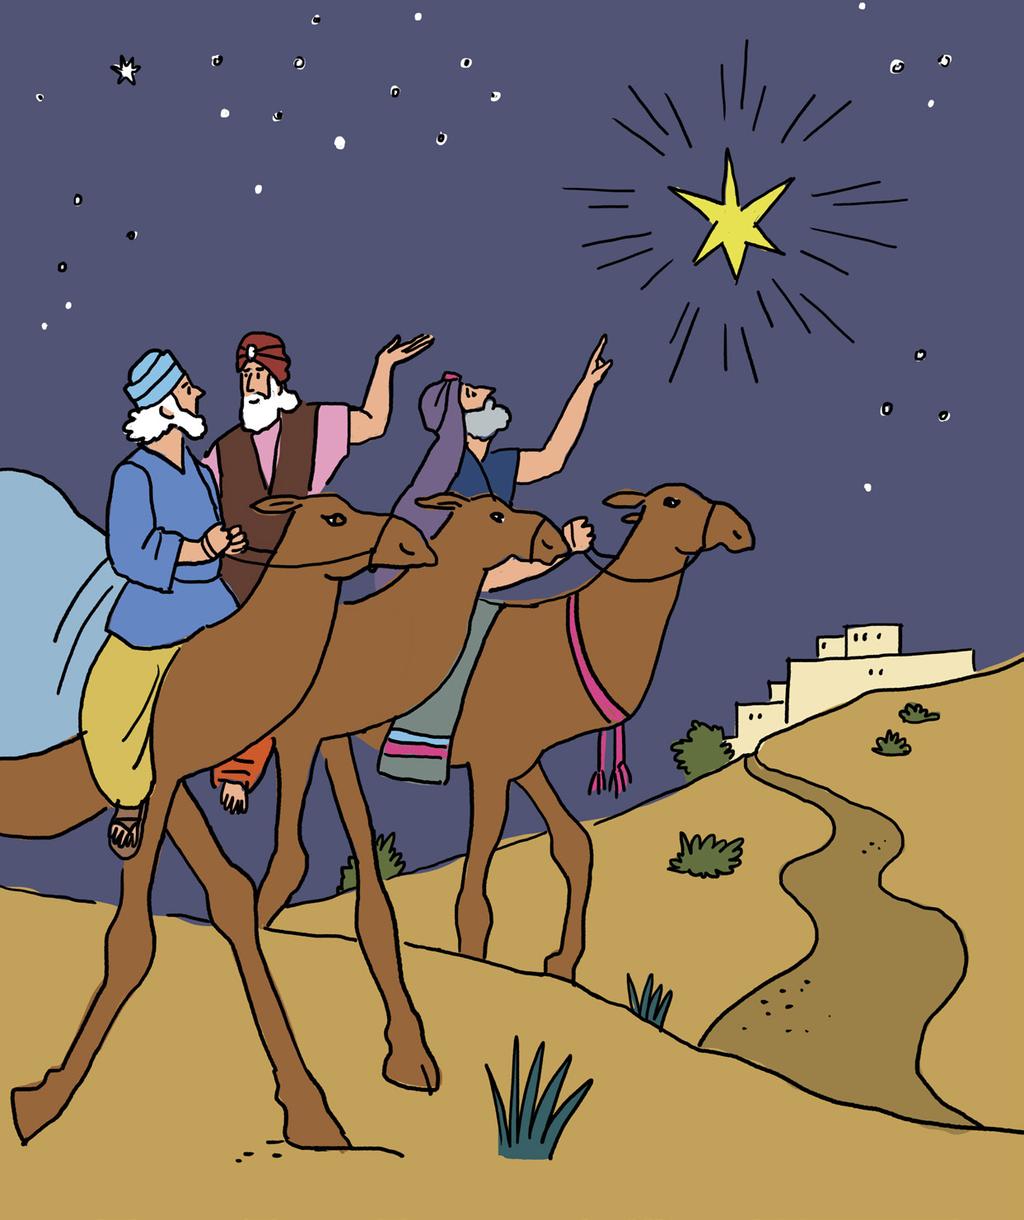 Tähti opastaa itämaan tietäjät Betlehemiin Itämaan tietäjien edellä kulki suuri tähti.